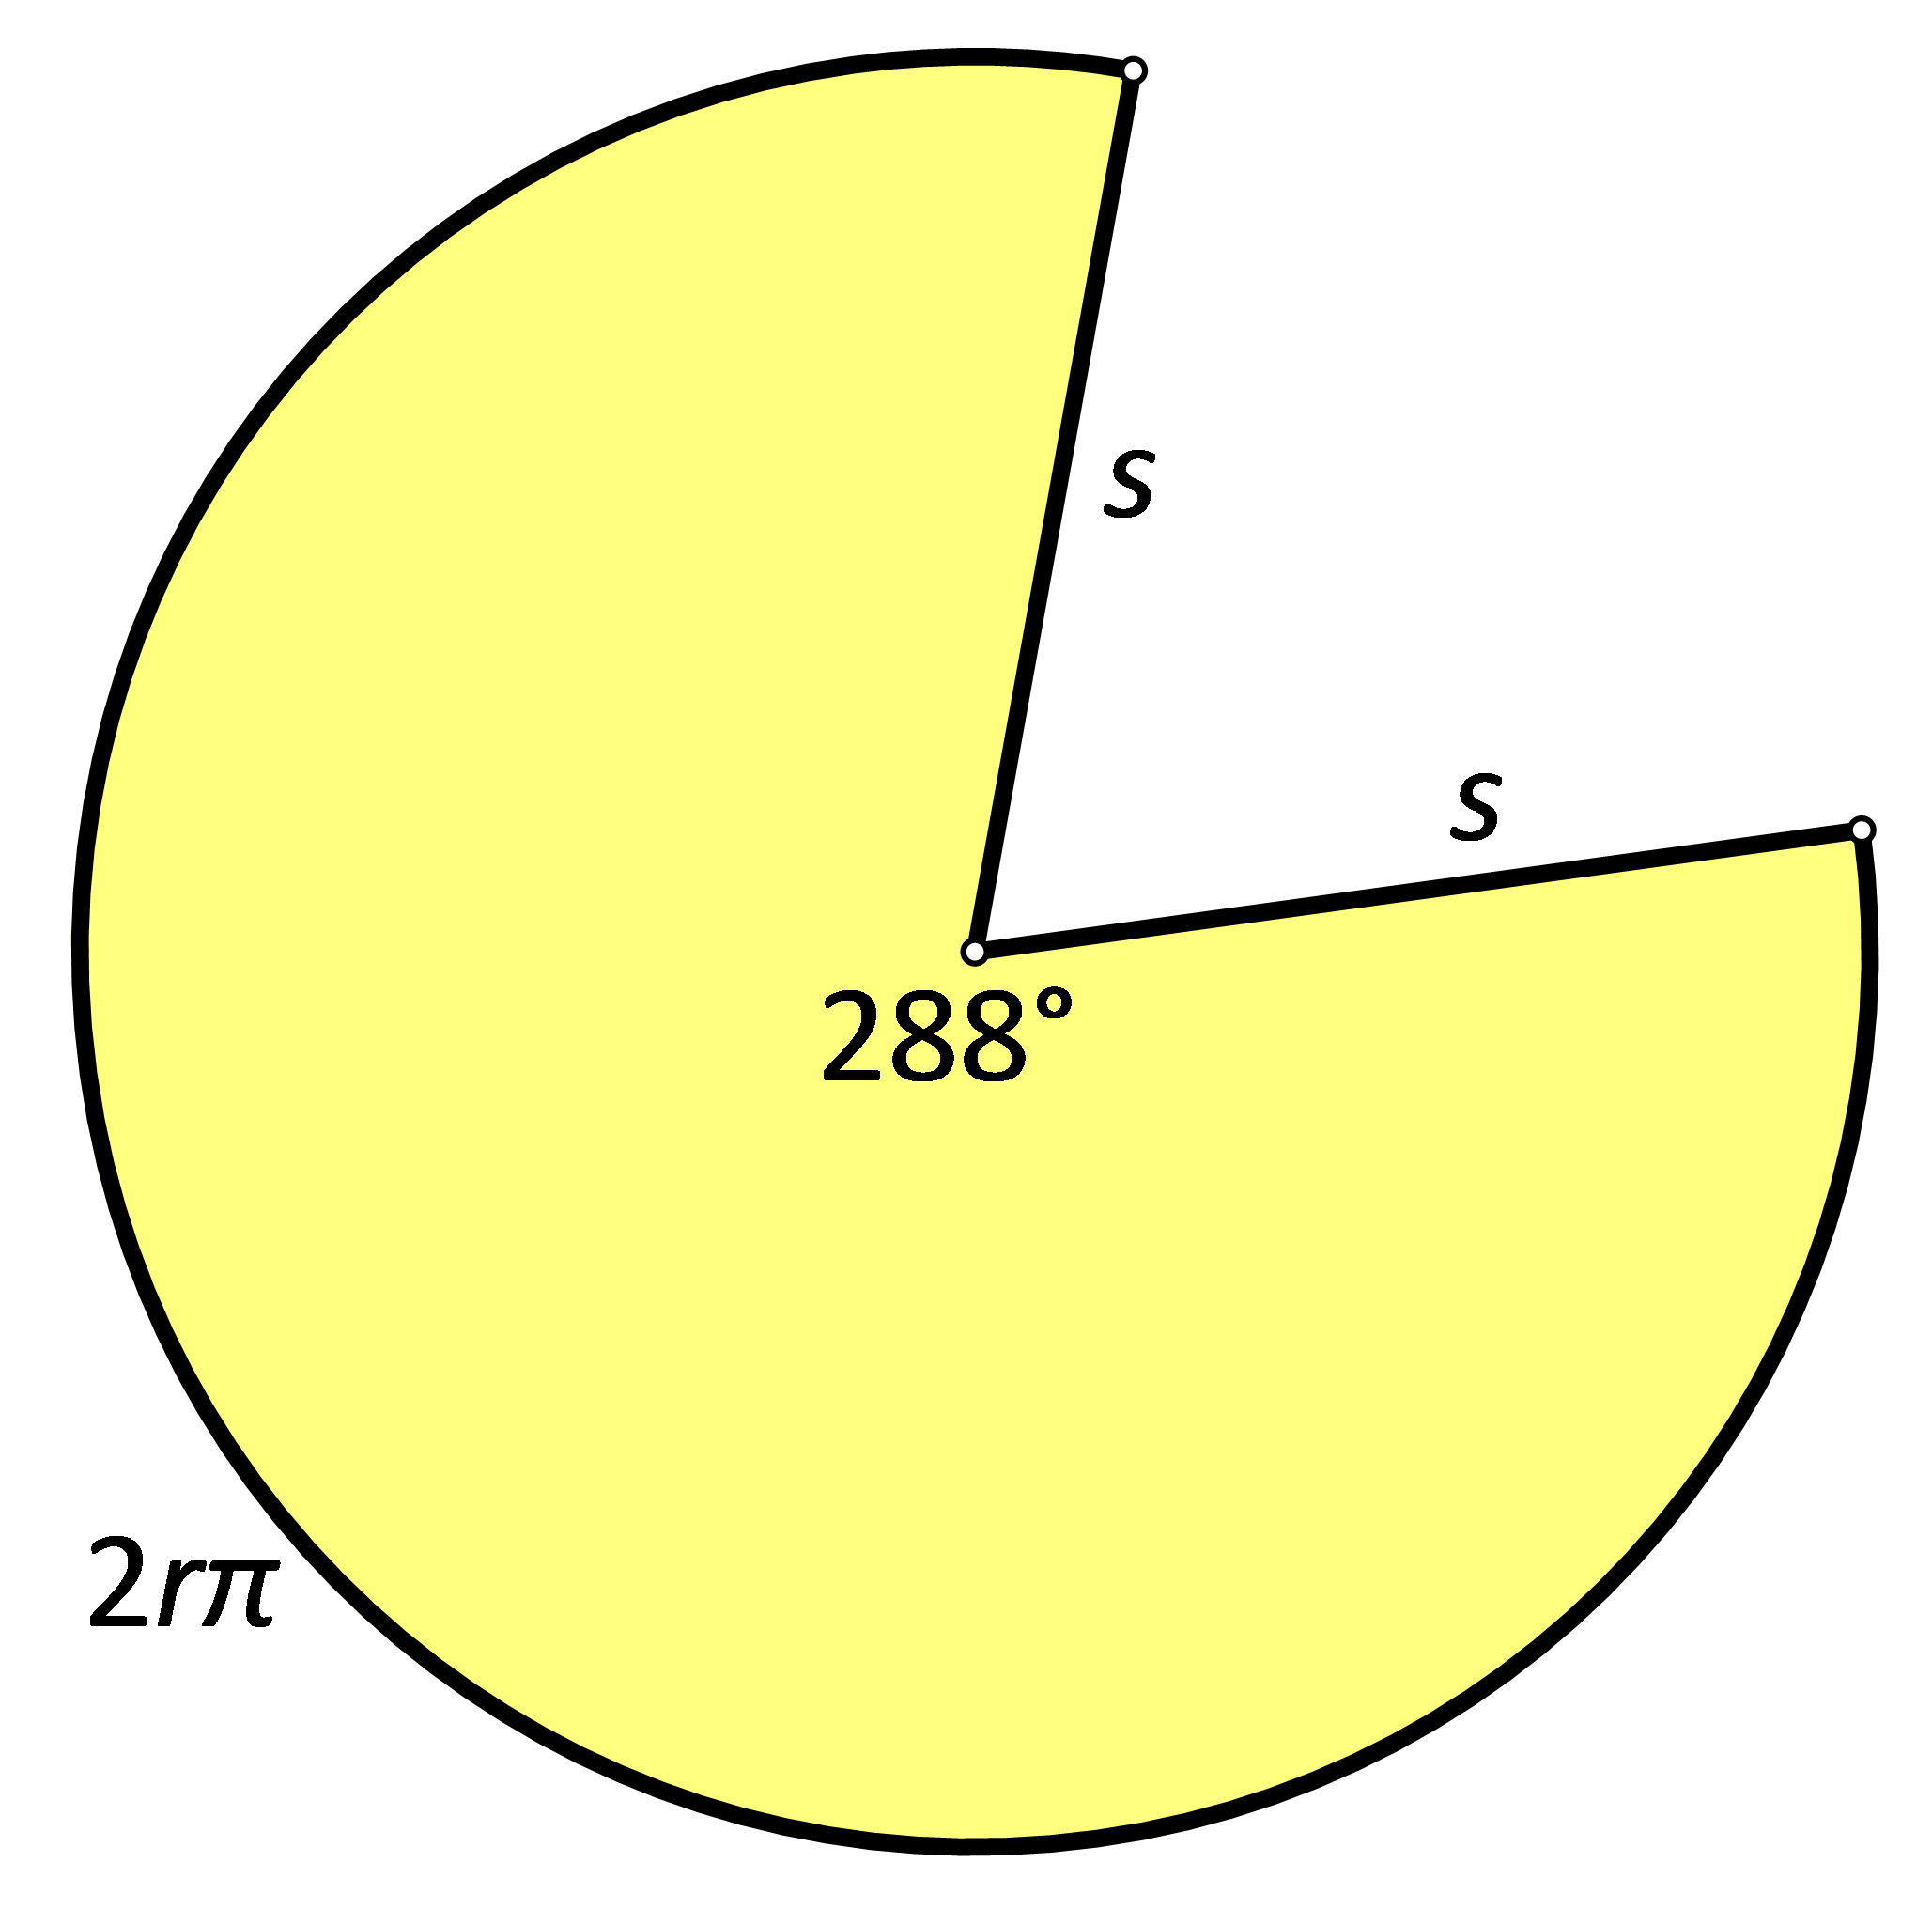 Slika prikazuje plašt stošca sa središnjim kutom veličine 288 stupnjeva.